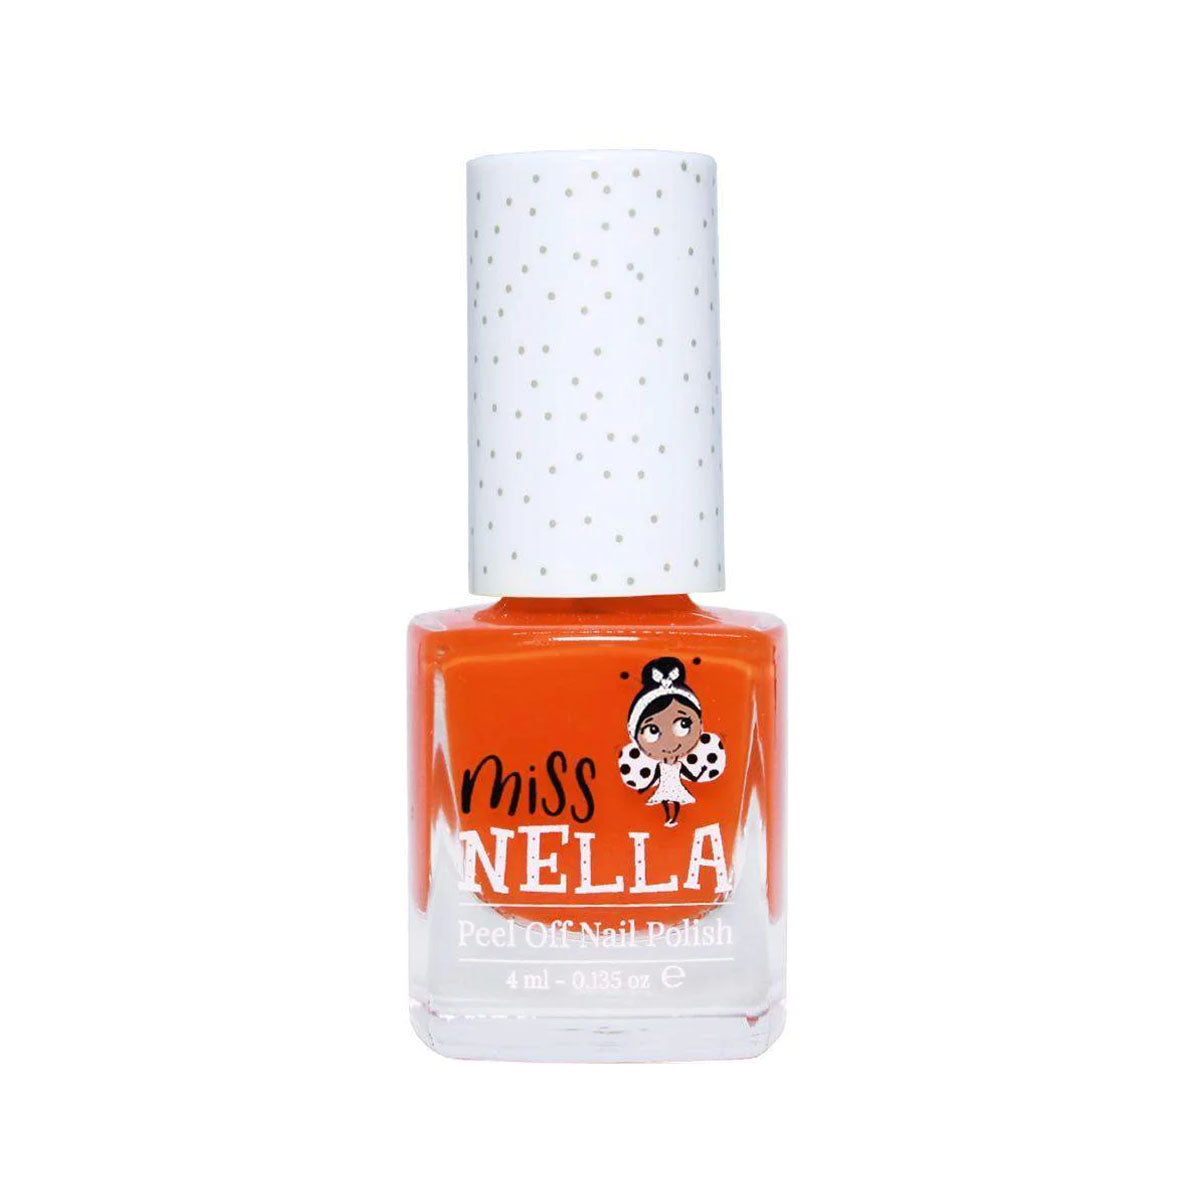 Laat de nageltjes van jouw kindje shinen met de nagellak poppy fields van het merk Miss Nella. De peel off nagellak is speciaal ontworpen voor kinderen en is vrij van chemicaliën. In verschillende kleuren. VanZus